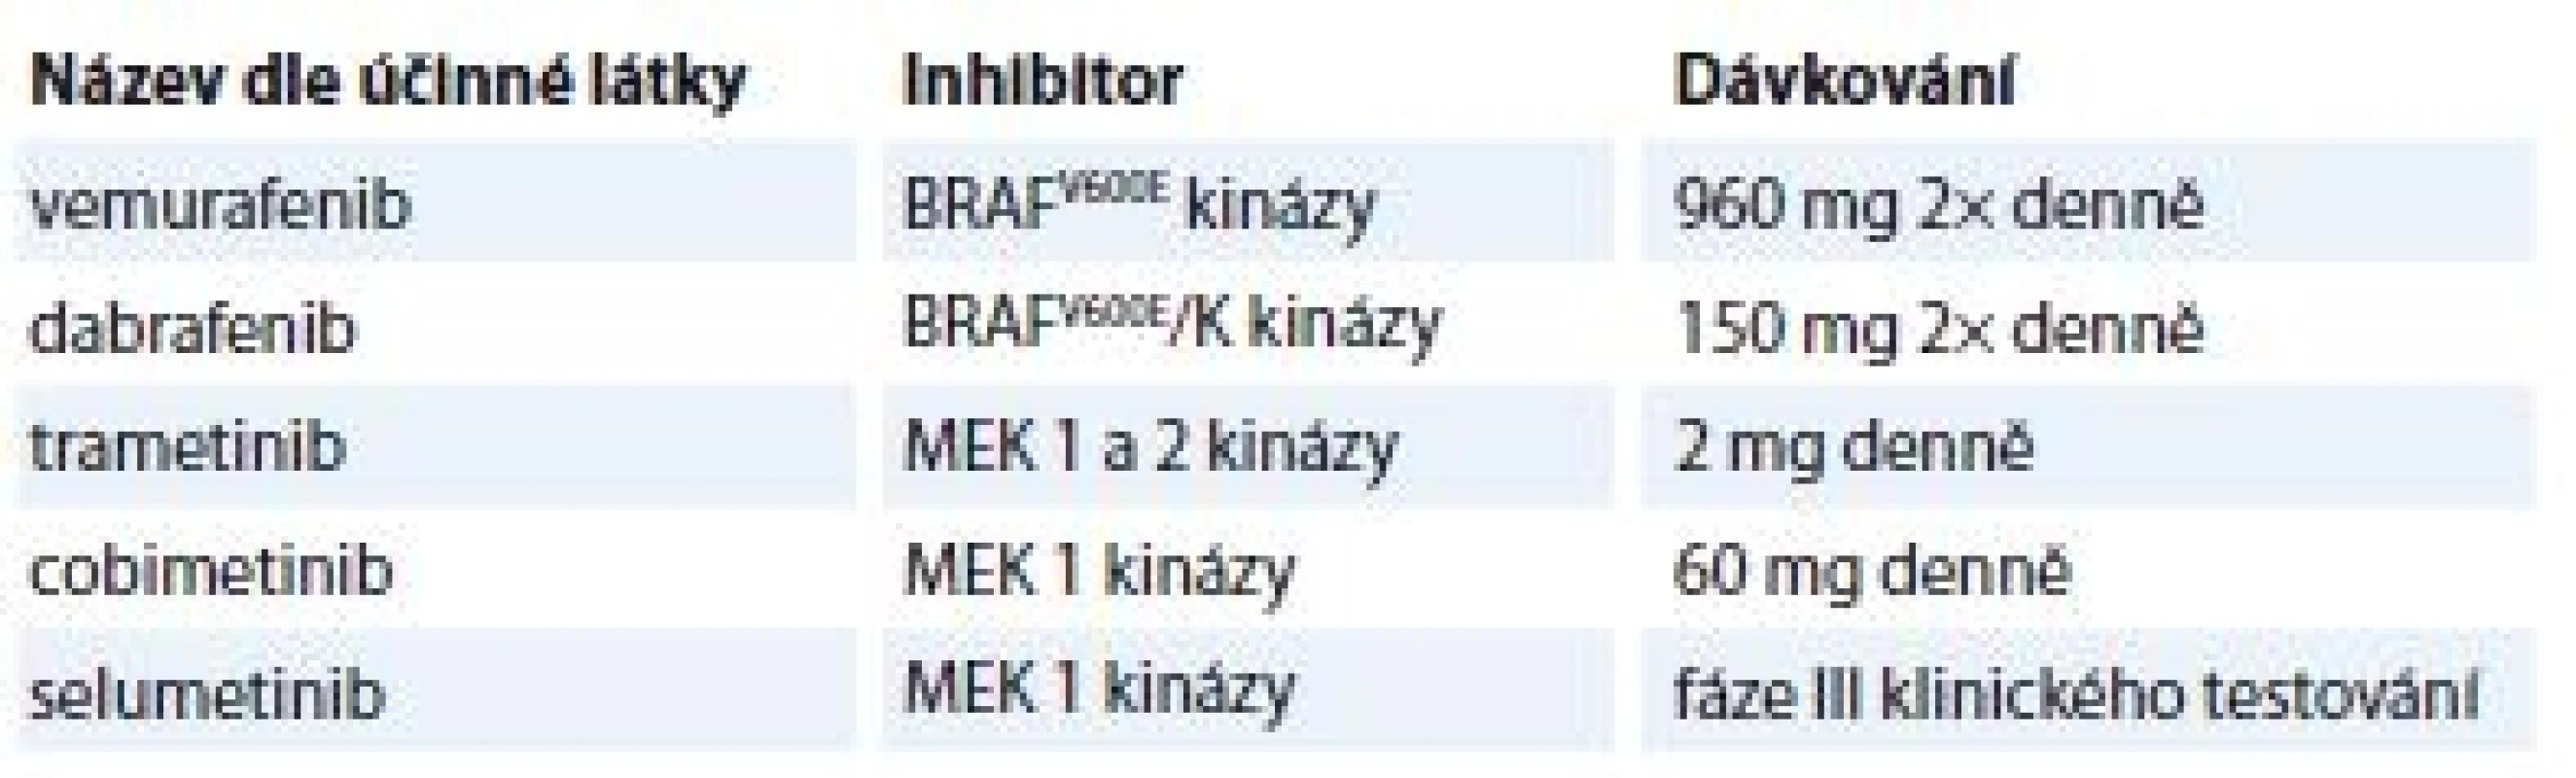 Přehled aktuálních RAF a MEK inhibitorů používaných v klinické praxi.